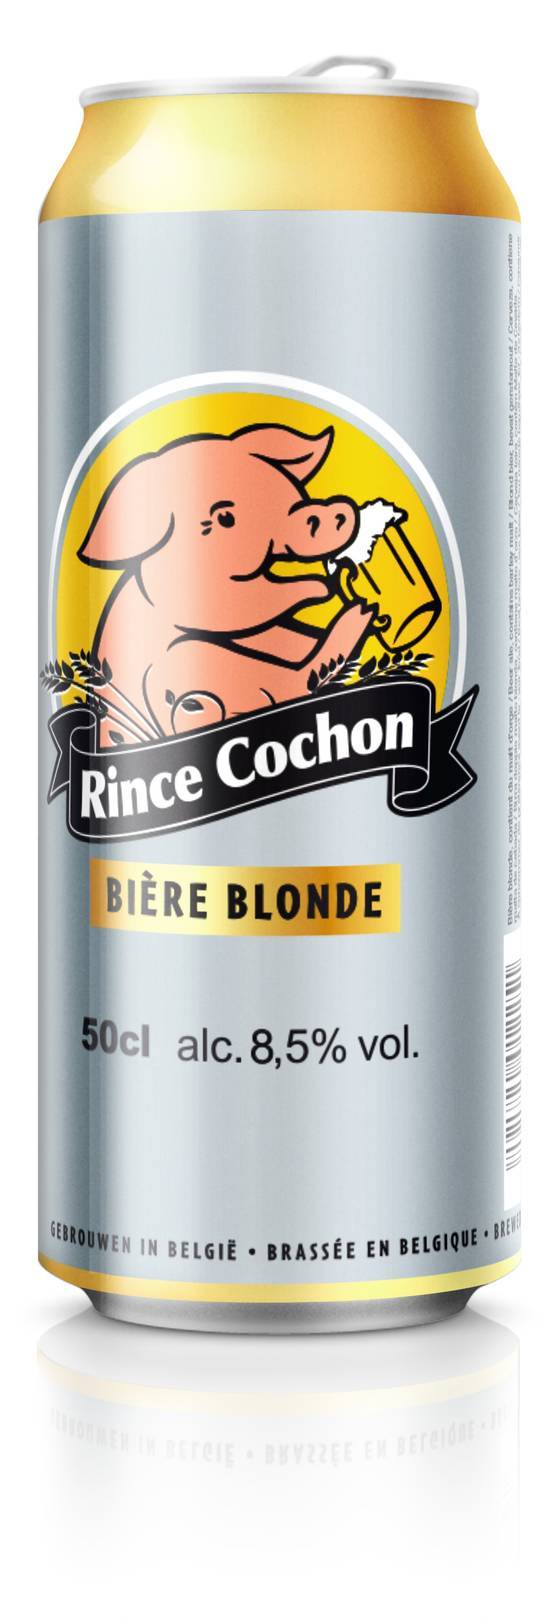 Rince cochon bière blonde (50 cl)